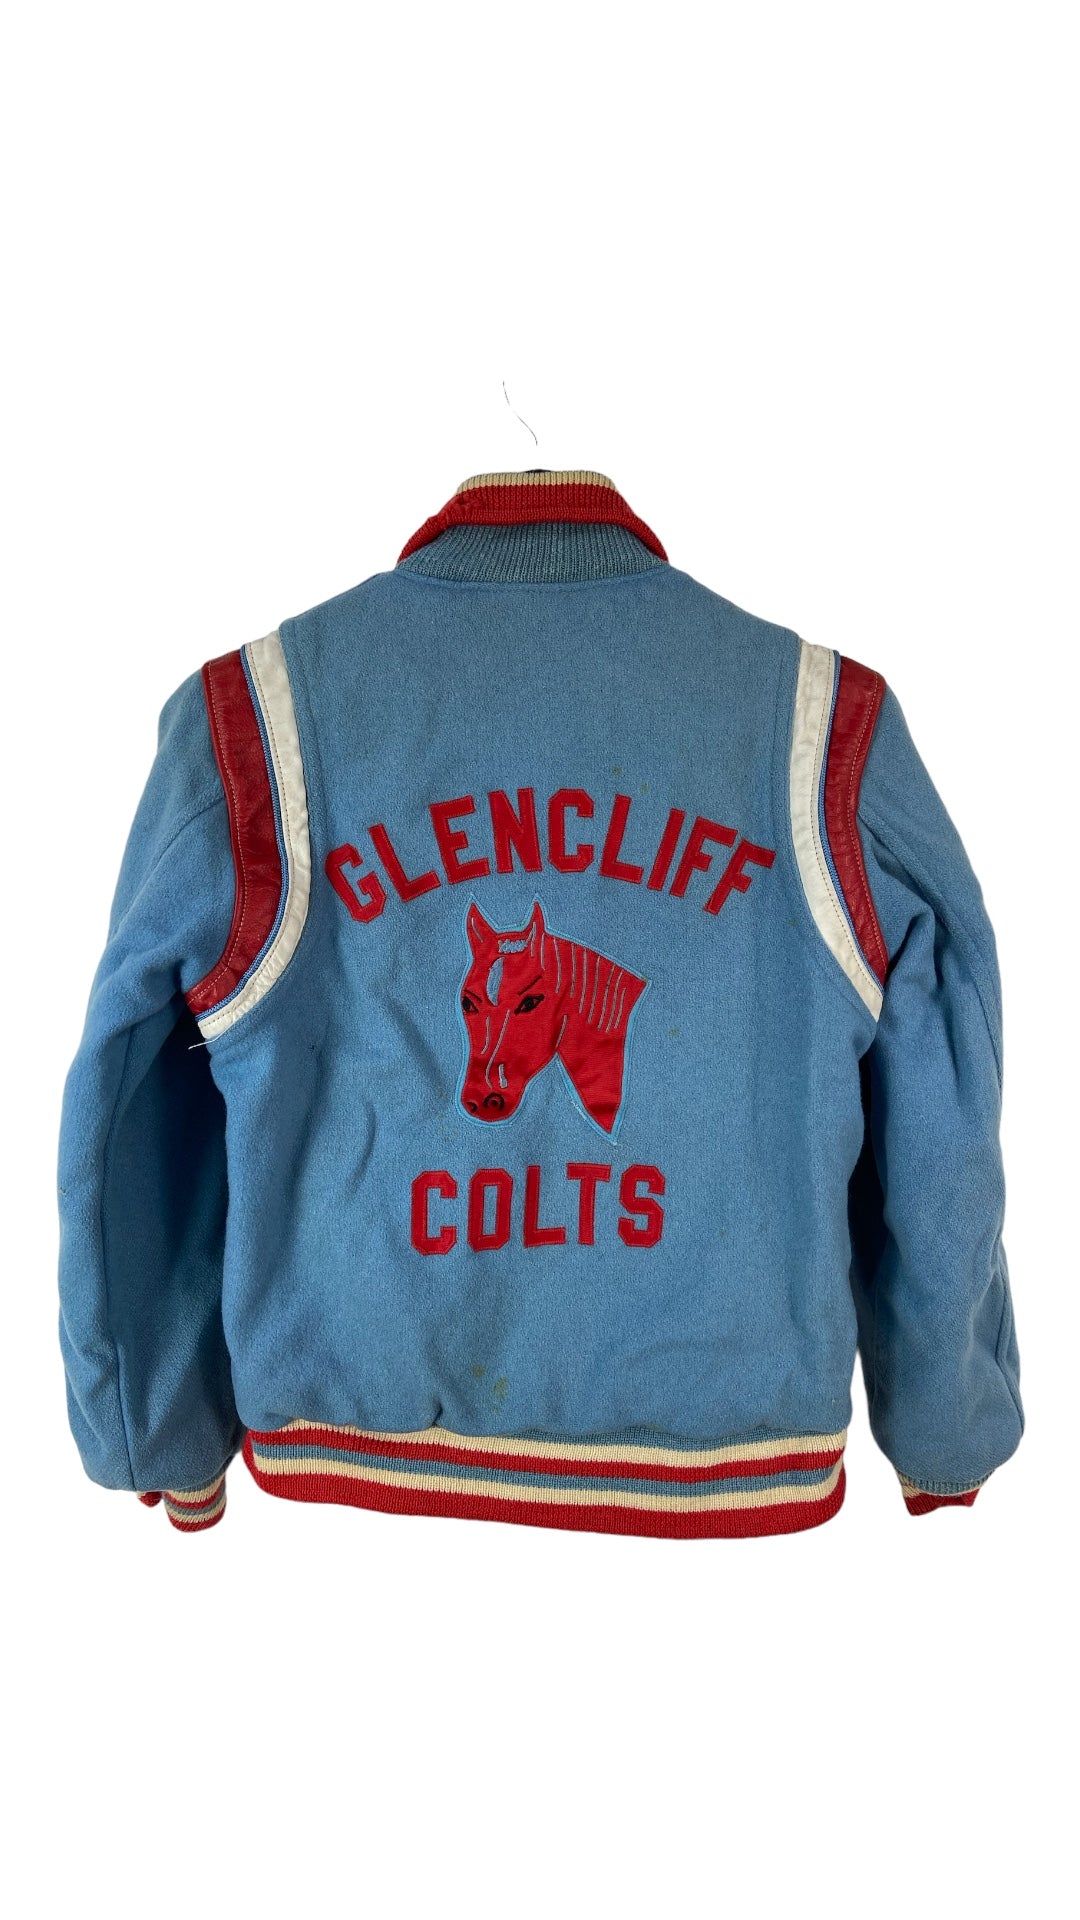 VTG 60s Glencliff High School Varsity Jacket Sz Med